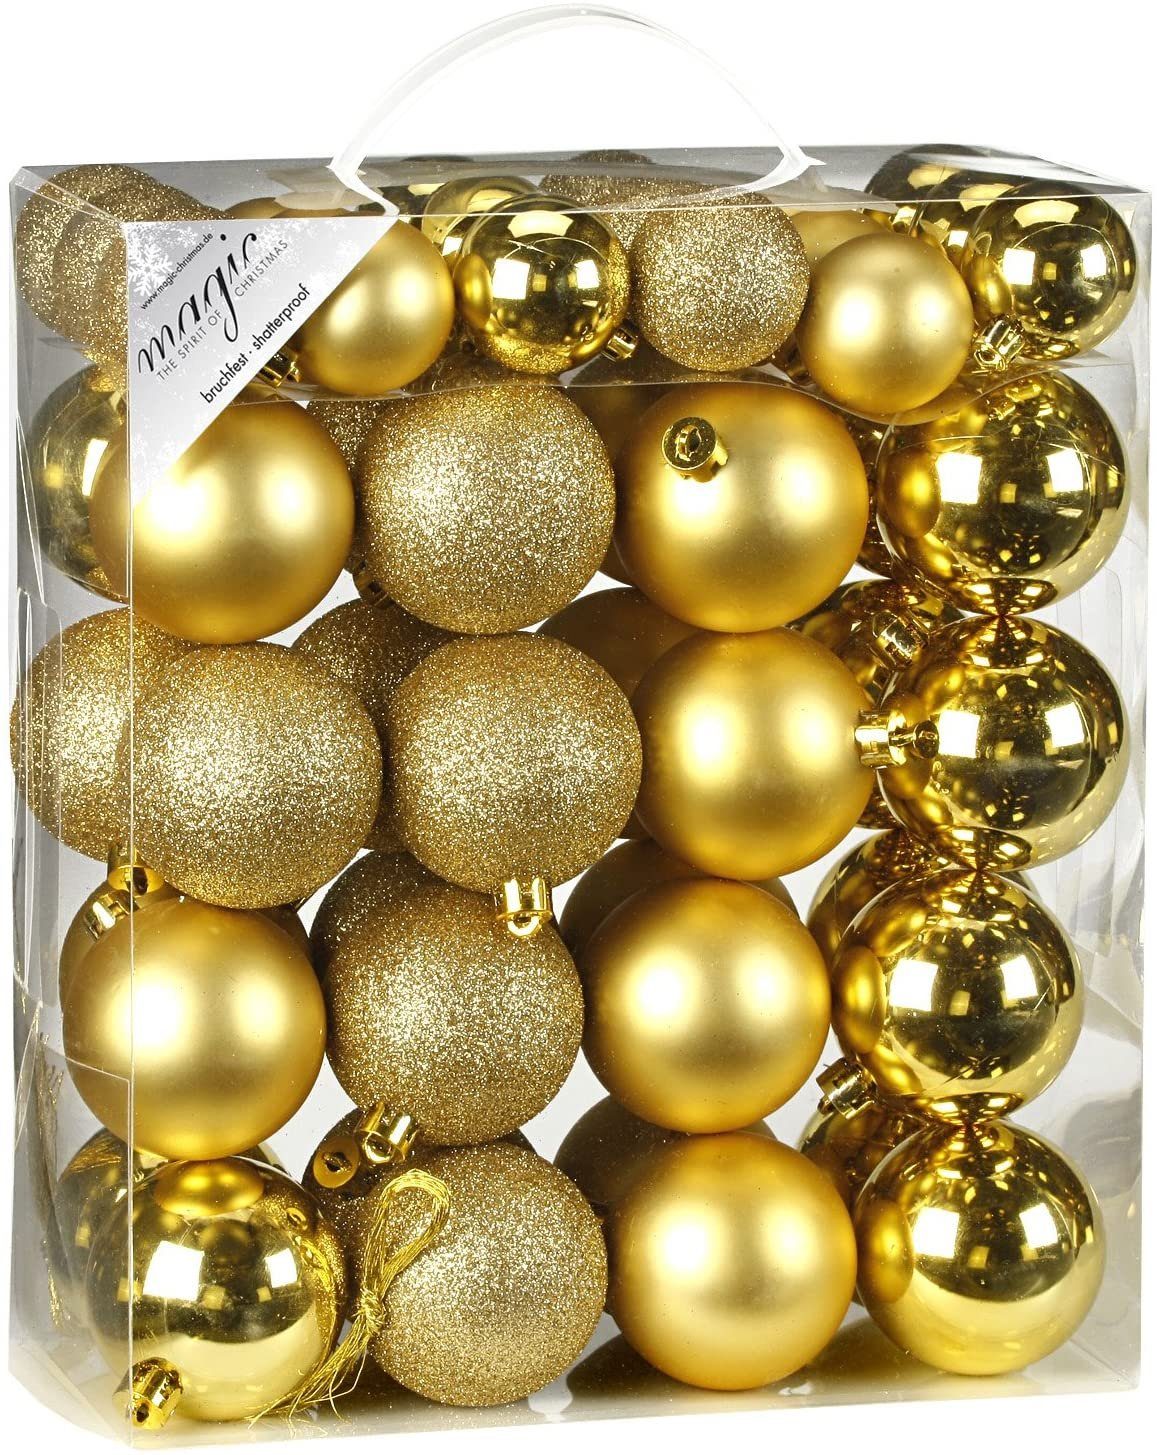 INGE-GLAS® Christbaumschmuck Inge's Weihnachtskugel 50 Baumschmuck, Kugel-Set Kunststoff, Weihnachtsdekoration, Gold, 4-6 Stück cm Baumdekoration